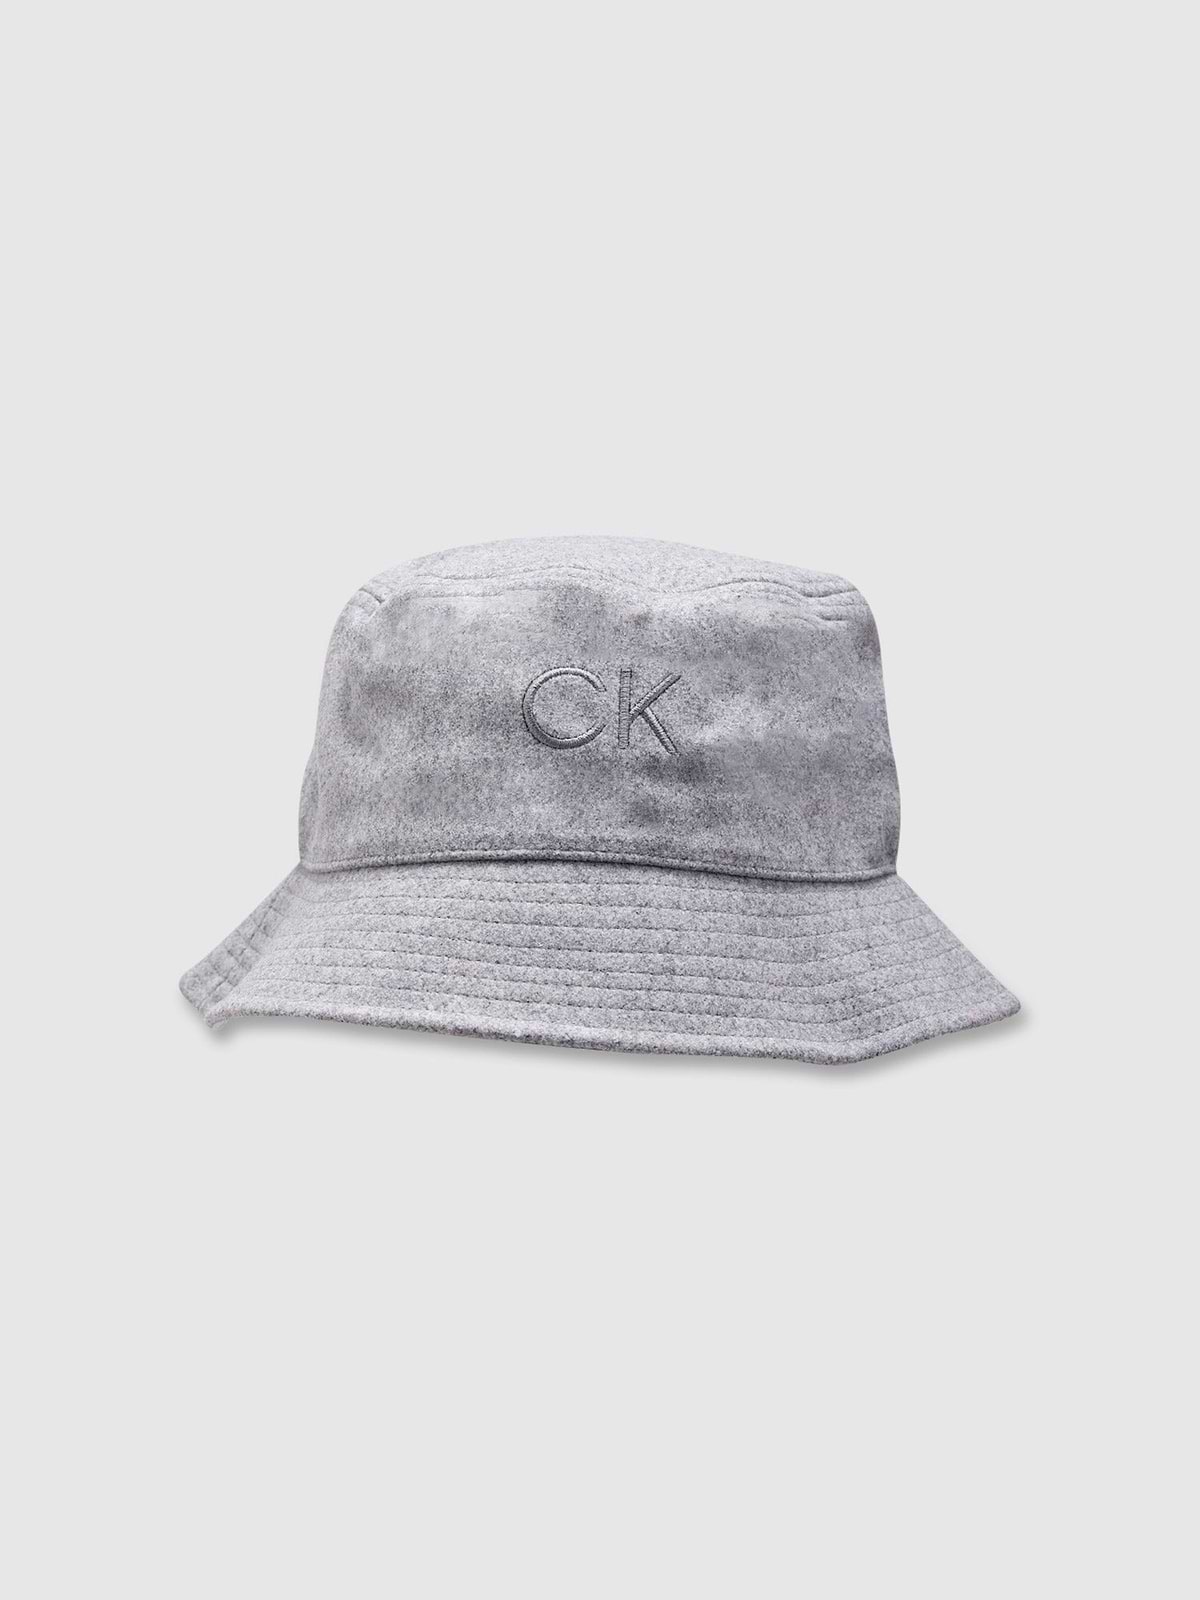 כובע באקט / נשים